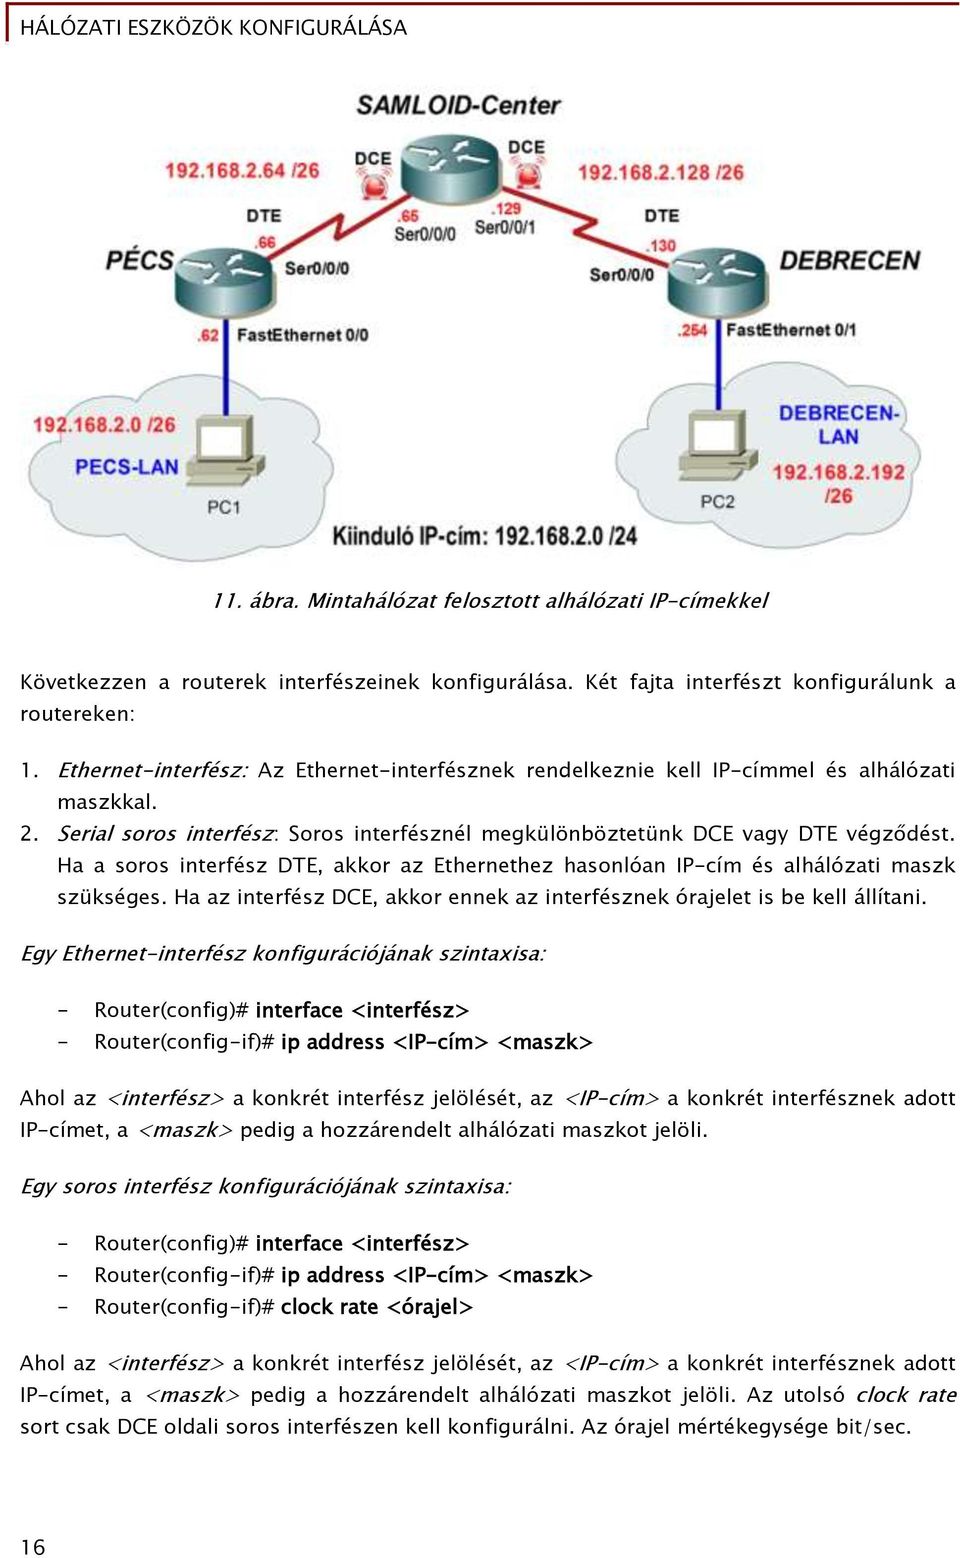 Ha a soros interfész DTE, akkor az Ethernethez hasonlóan IP-cím és alhálózati maszk szükséges. Ha az interfész DCE, akkor ennek az interfésznek órajelet is be kell állítani.